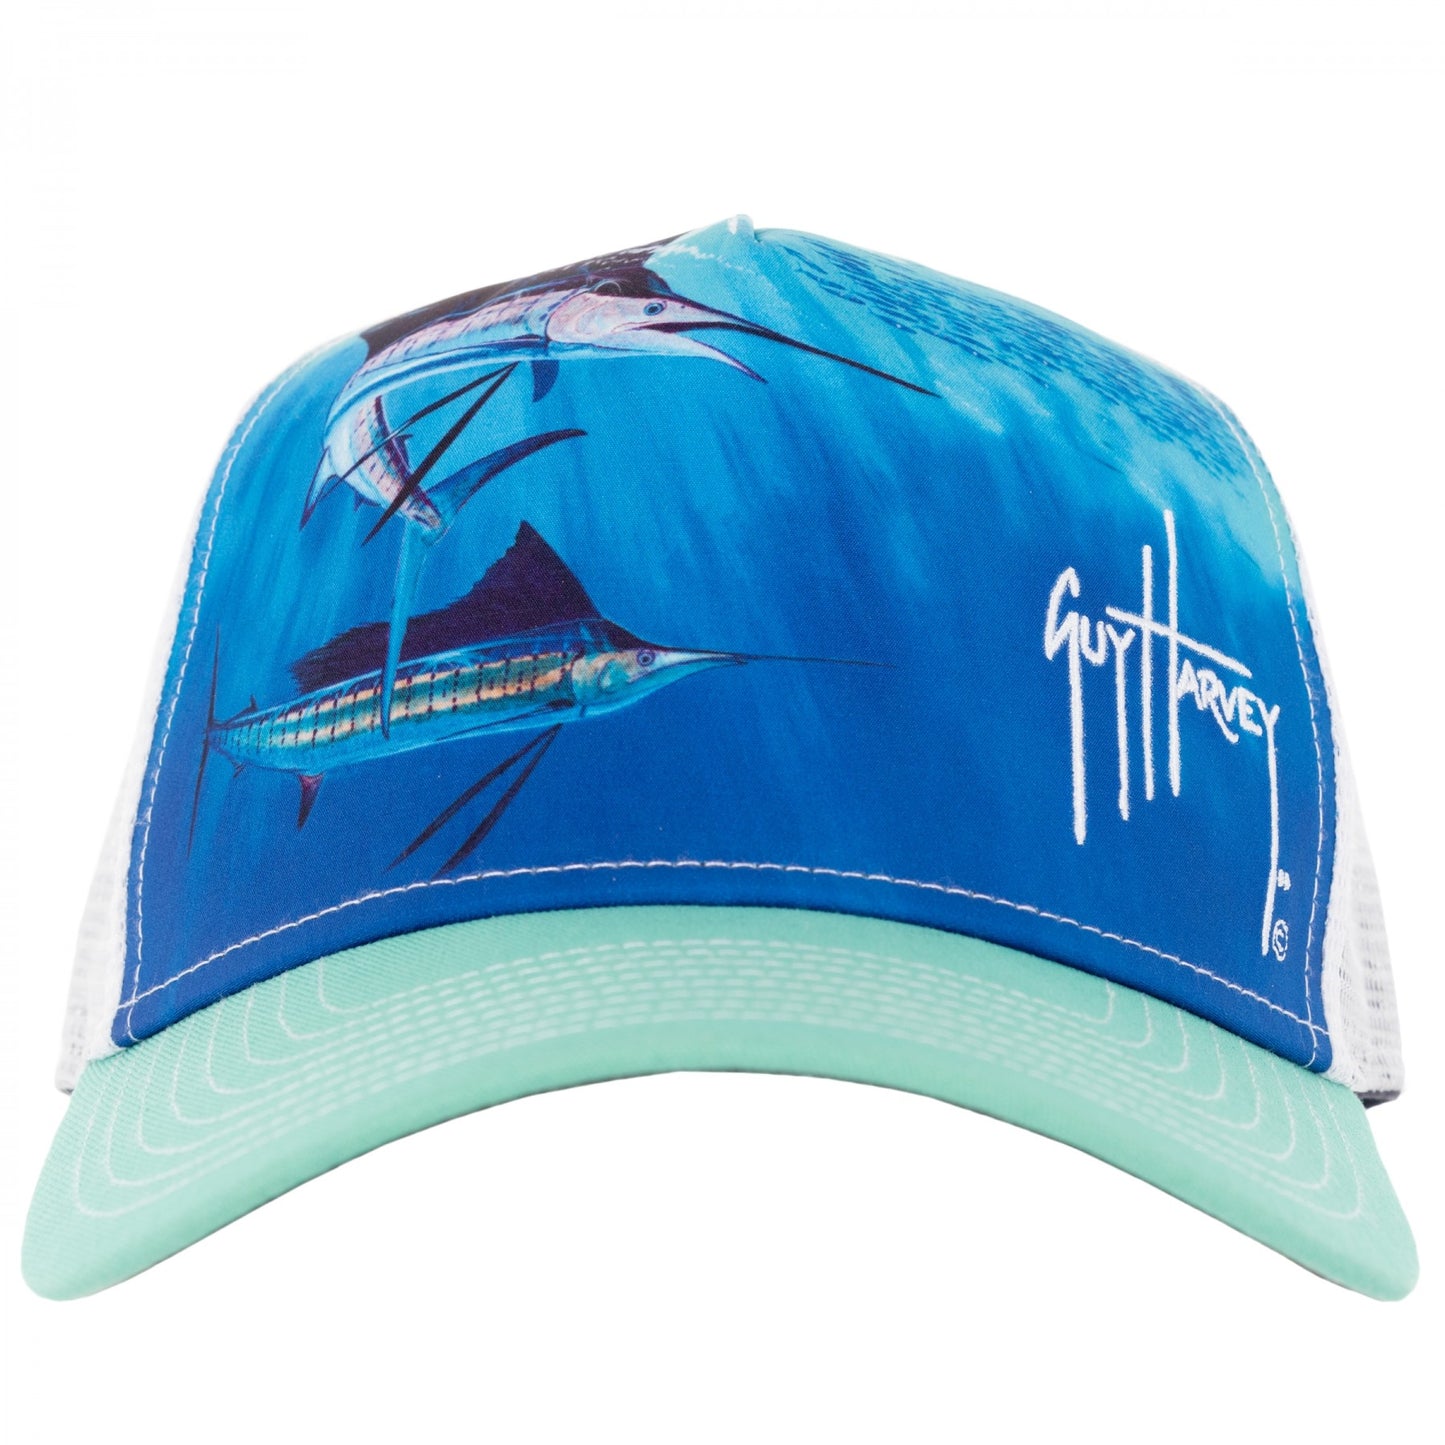 Guy Harvey Men's Sailfish Trucker Mesh Hat, White, OSFM